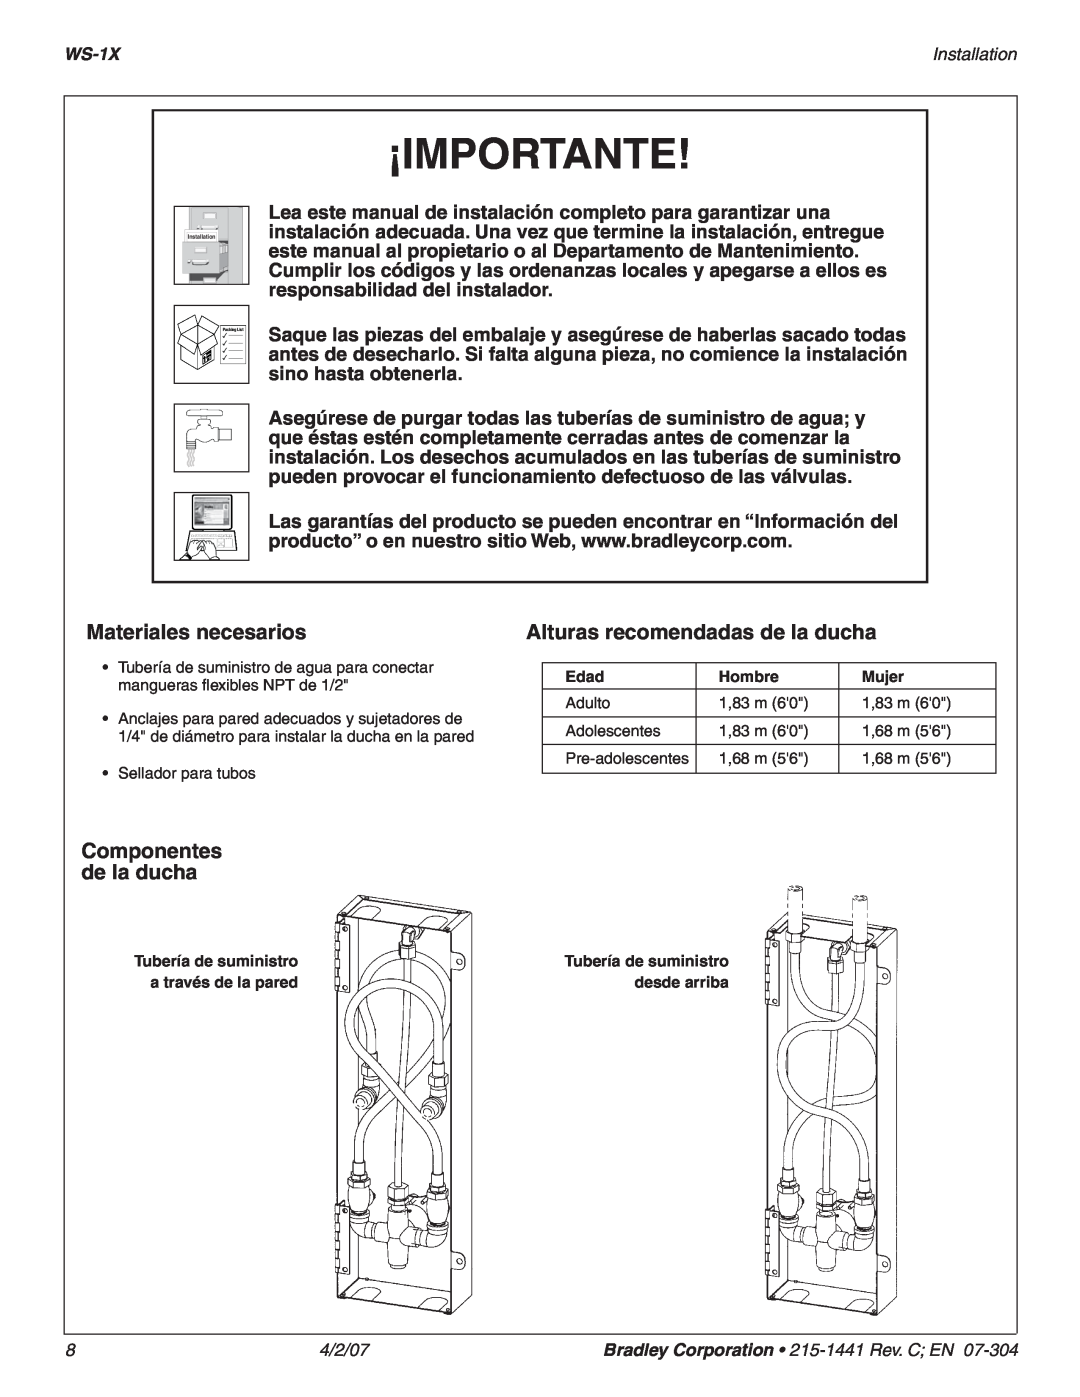 Bradley Smoker WS-1X Materiales necesarios, Alturas recomendadas de la ducha, Componentes de la ducha, ¡Importante 